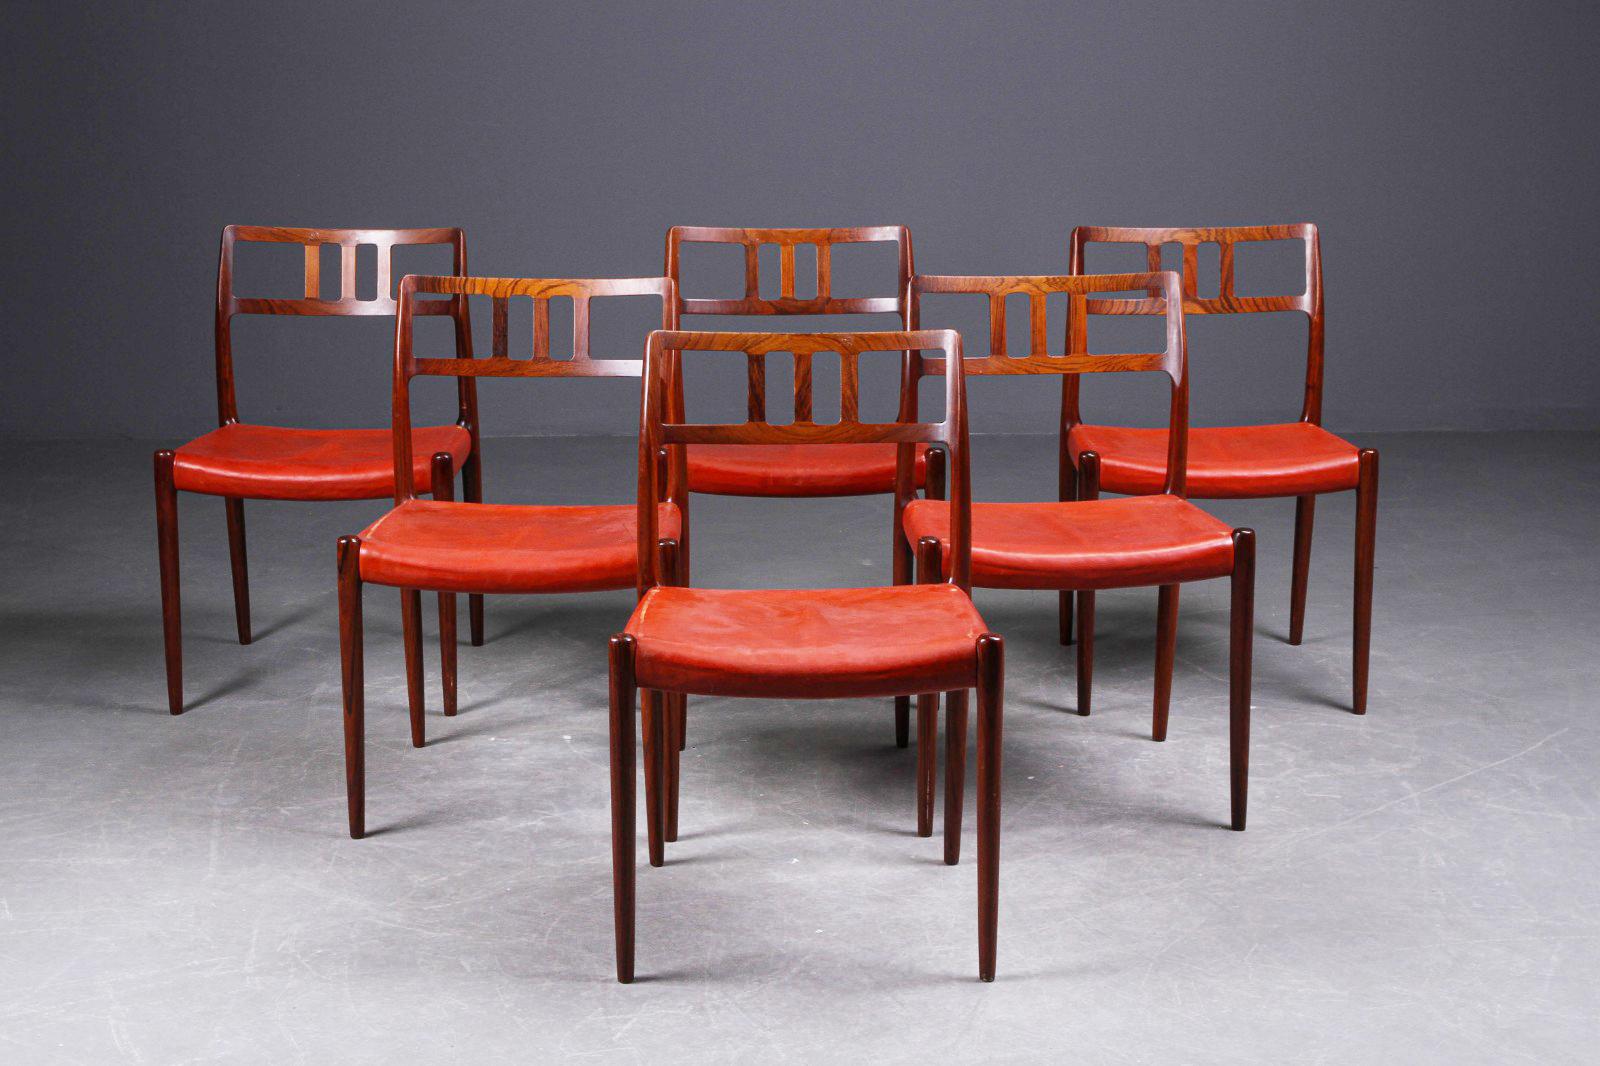 Äußerst seltener Satz von 6 Esszimmerstühlen Modell 79, entworfen 1966 von Niels O. Møller und hergestellt von J.L Møllers møbelfabrik in Dänemark.
Hartholzrahmen mit Lederbezug, dieser kann kostenlos gegen eine andere Lederfarbe oder einen anderen